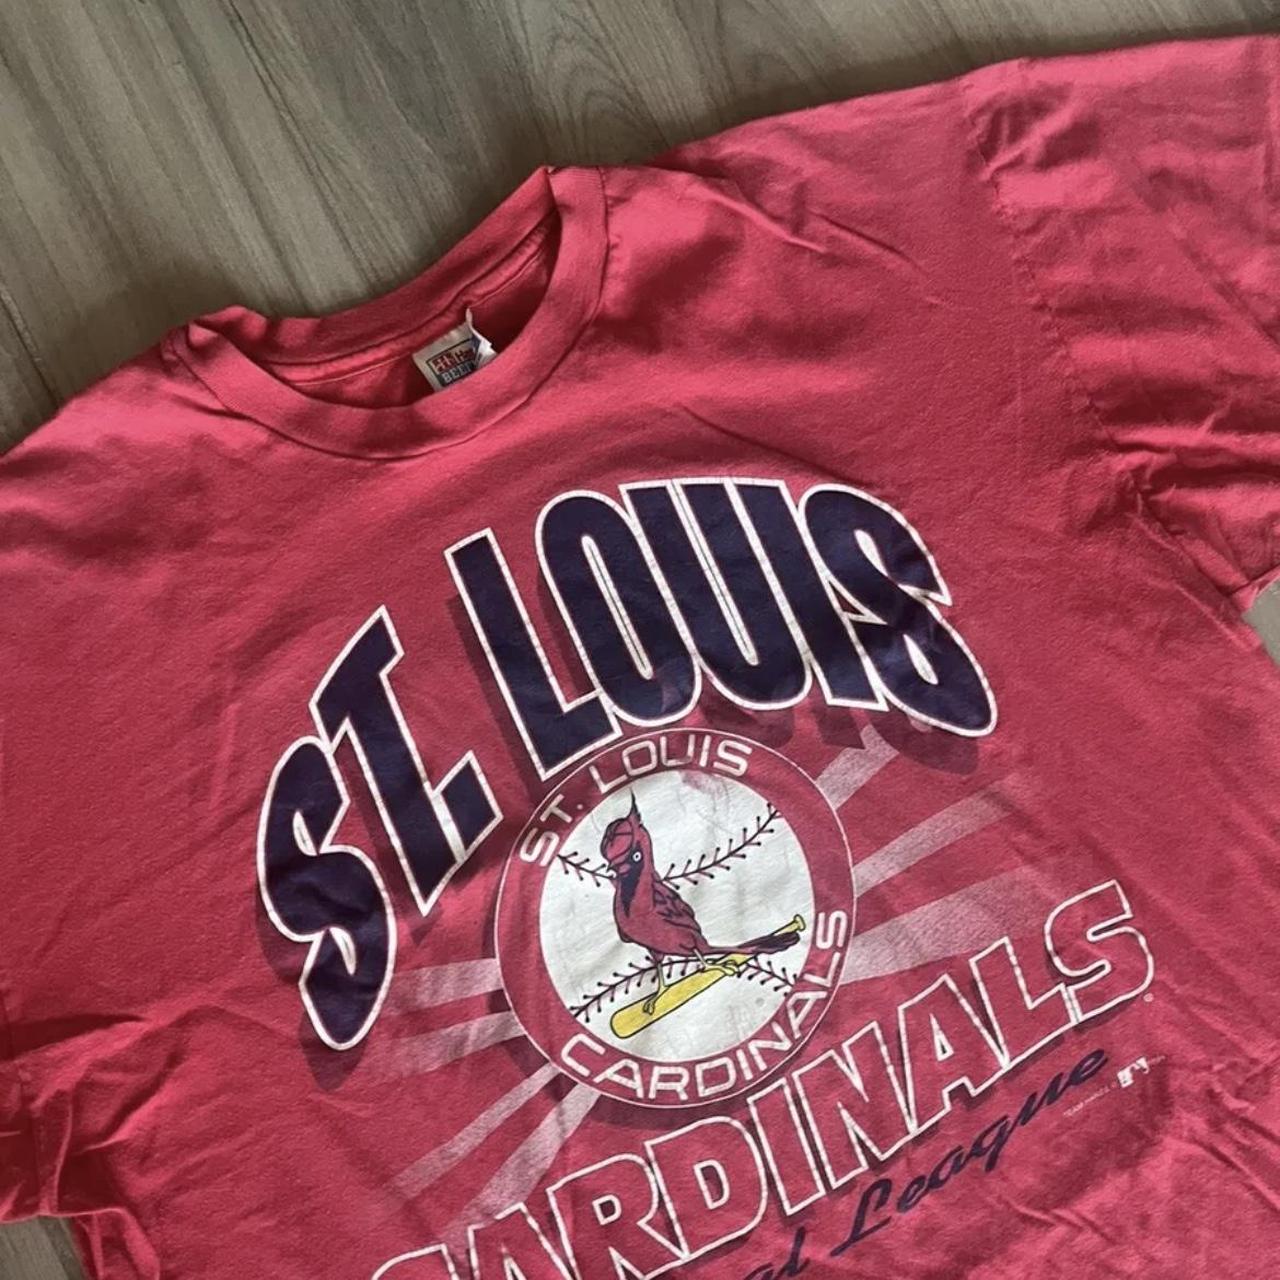 St. Louis Cardinals T-Shirt Men's Size XL Short - Depop